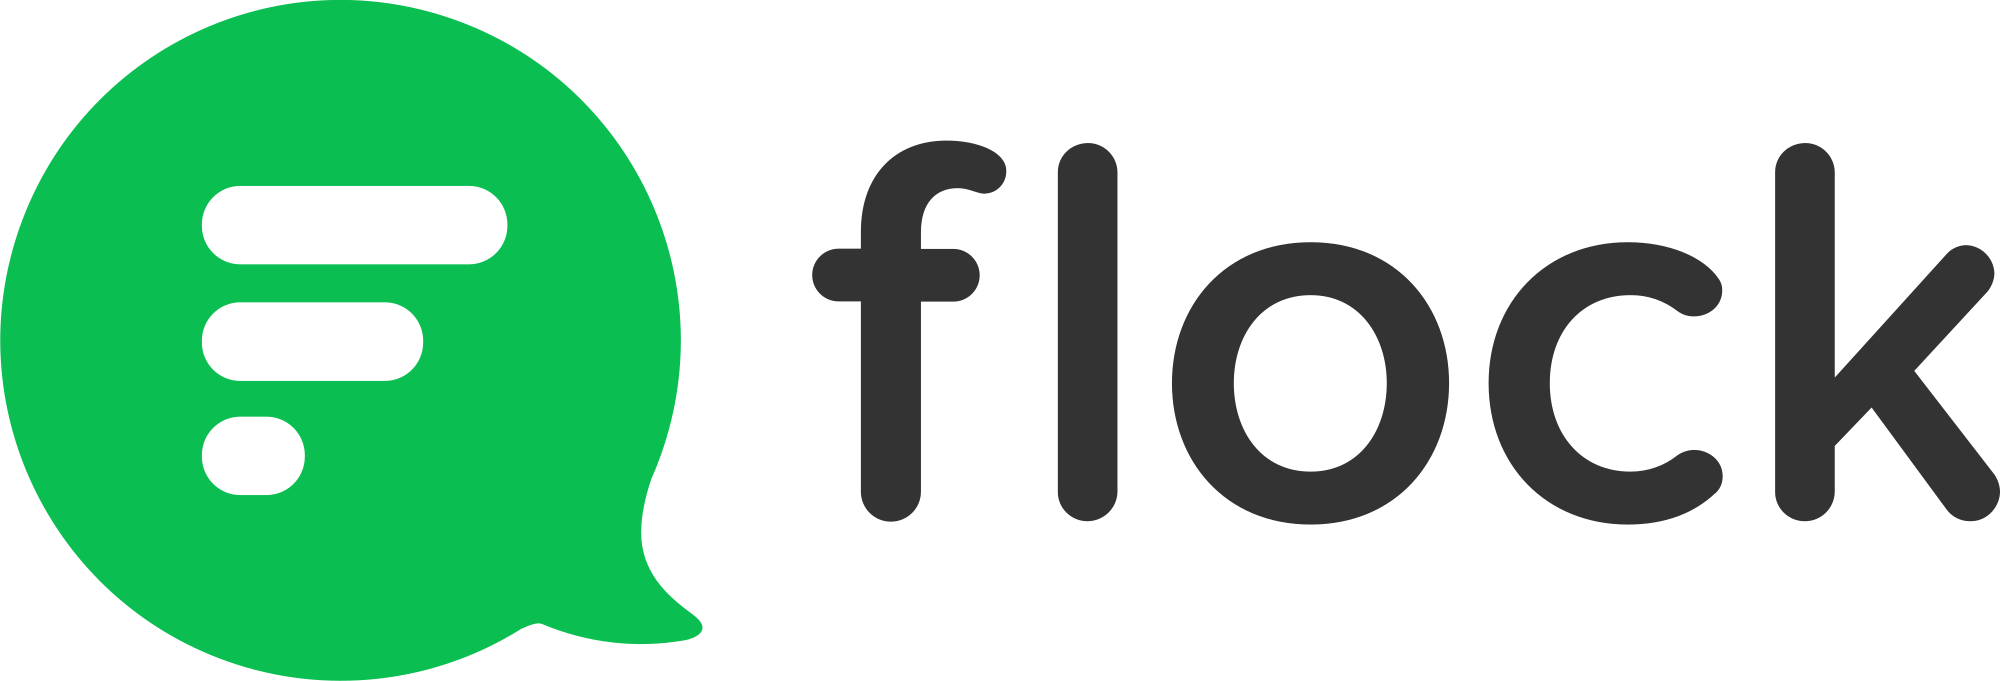 Flock Logo - Flock Logo.svg